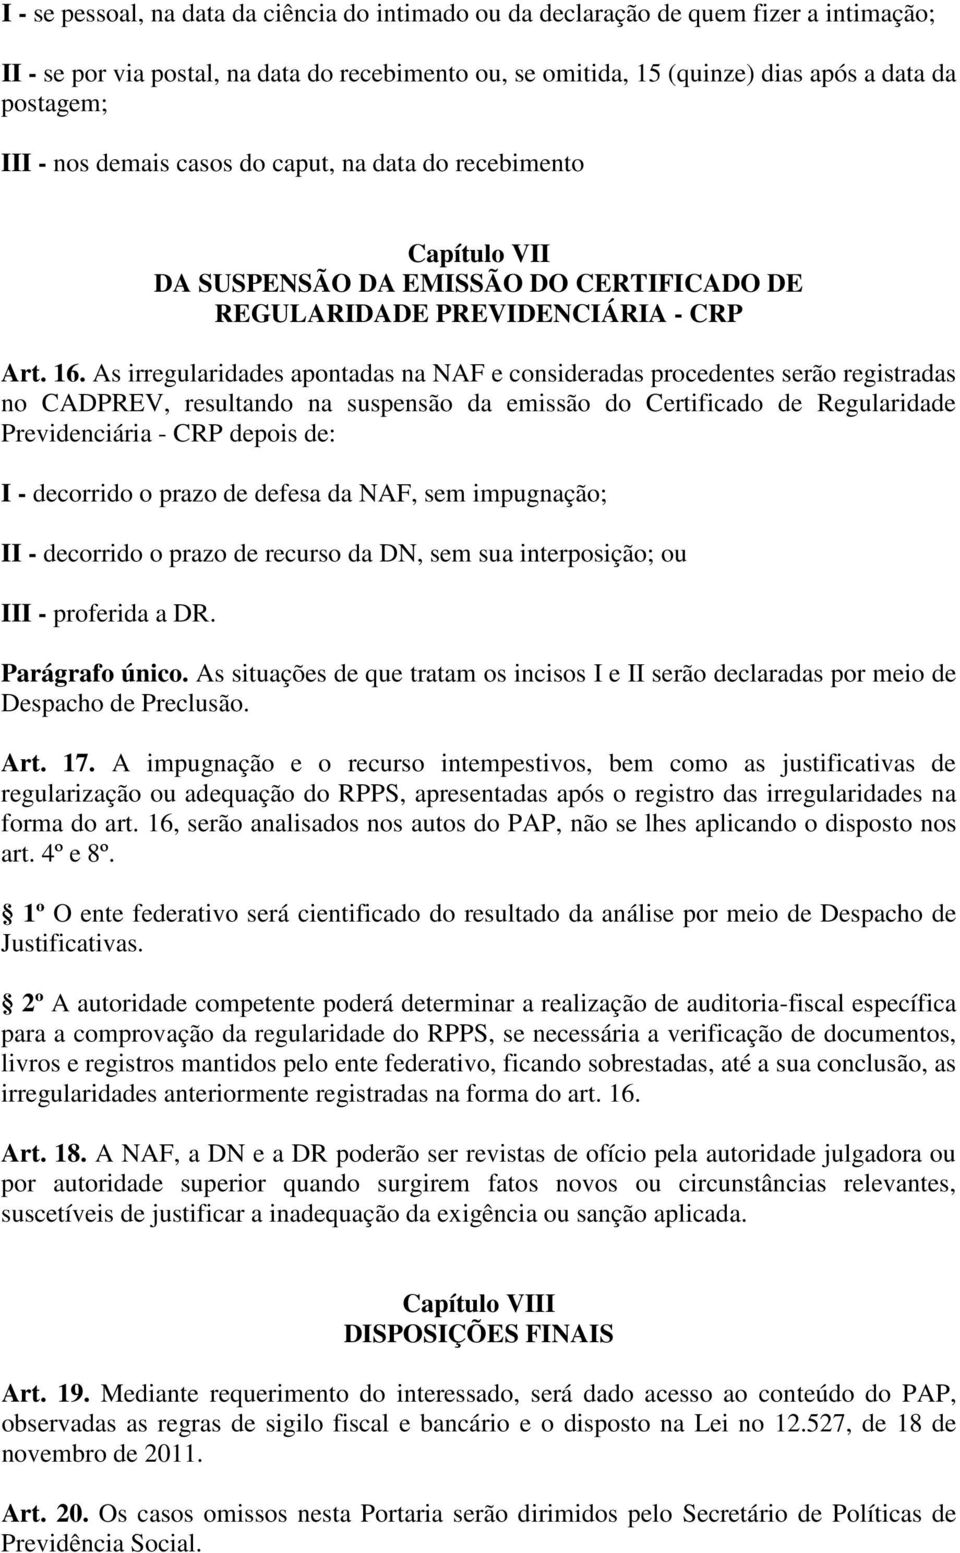 As irregularidades apontadas na NAF e consideradas procedentes serão registradas no CADPREV, resultando na suspensão da emissão do Certificado de Regularidade Previdenciária - CRP depois de: I -